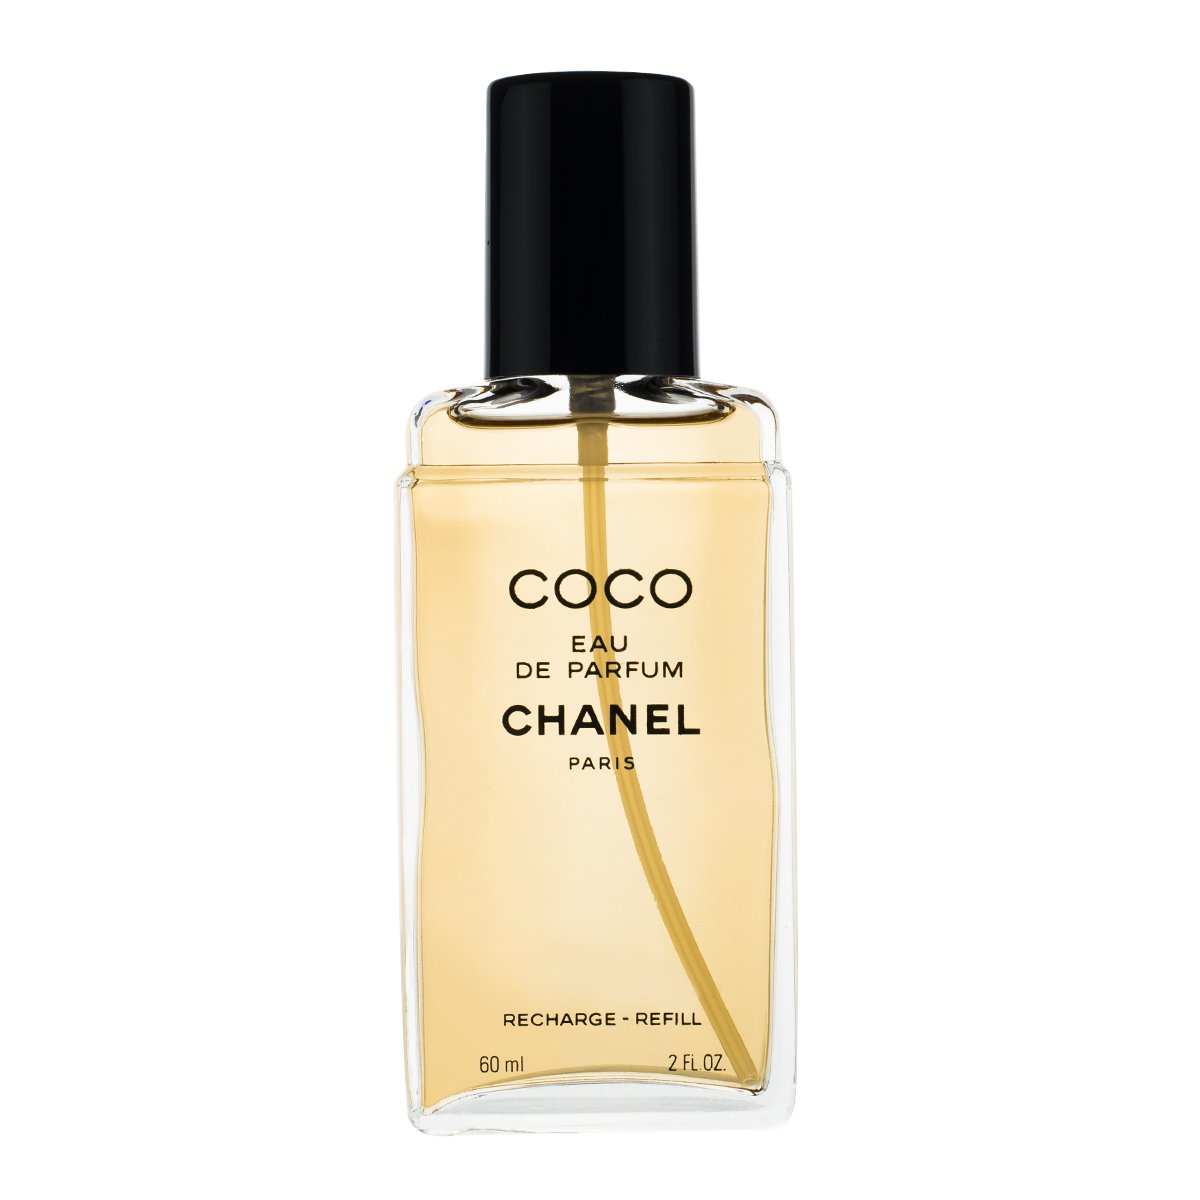 Chanel Coco Eau de Parfum Spray Refill 60ml